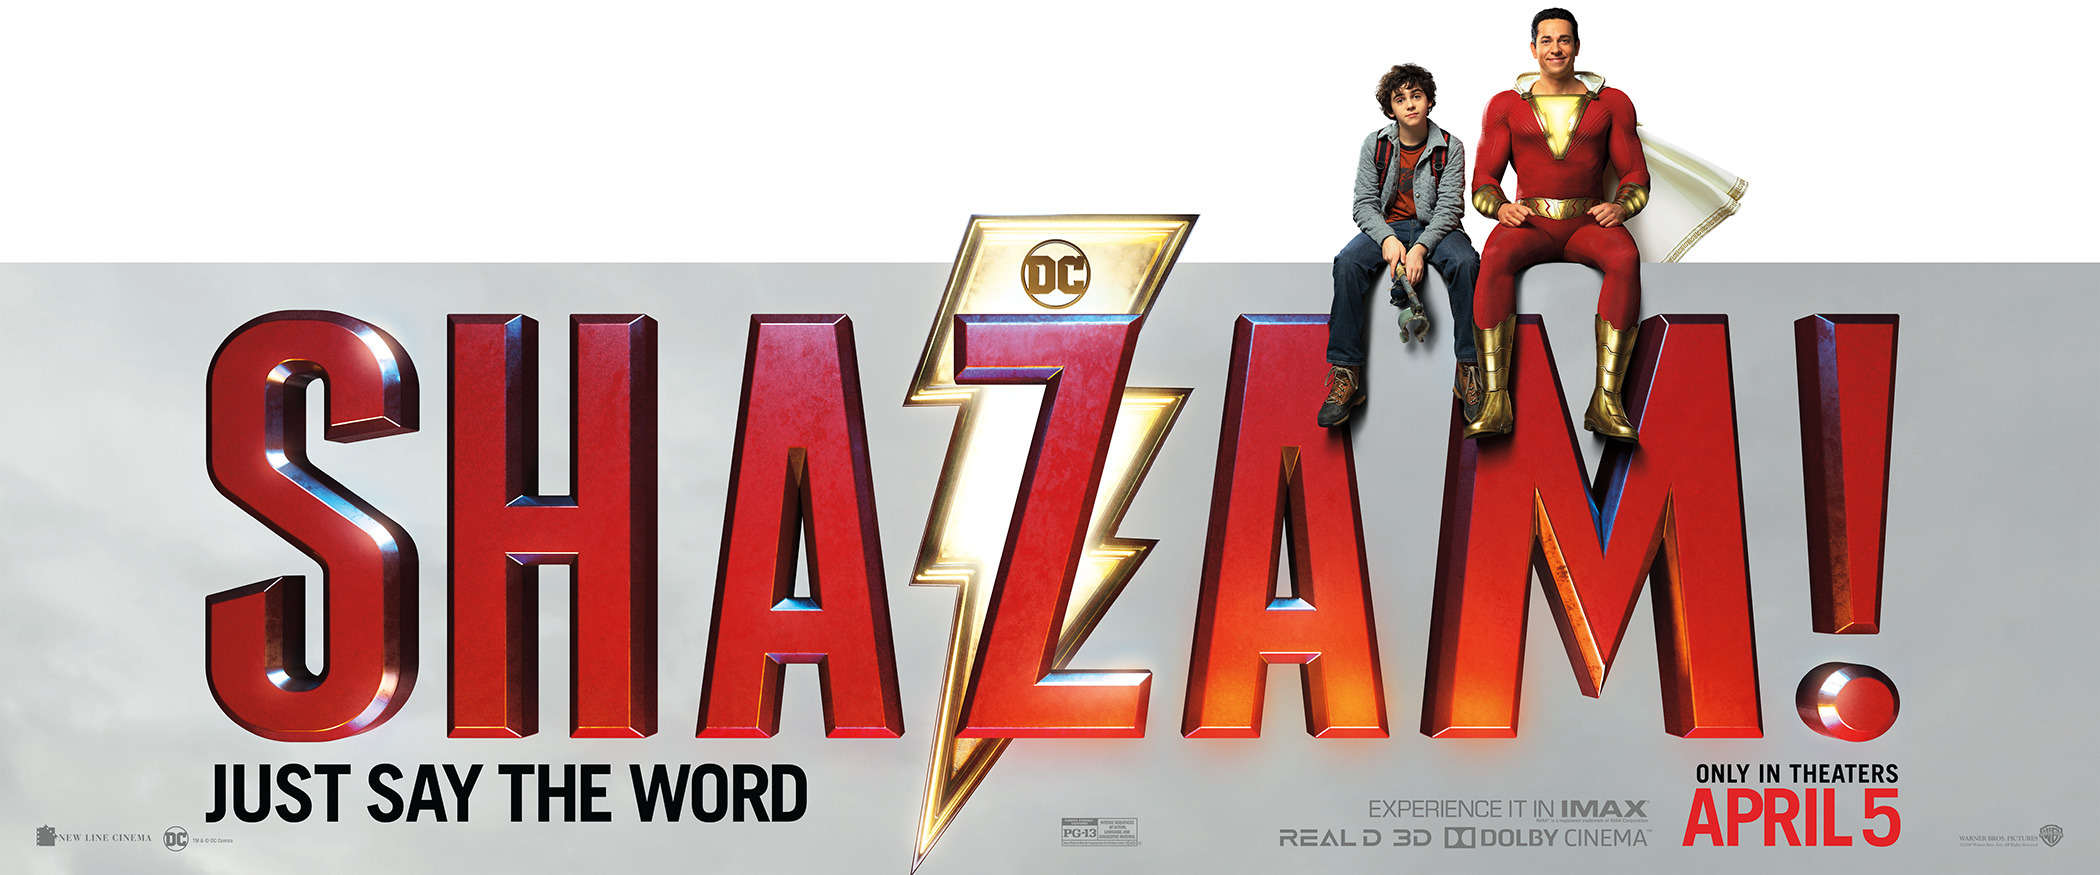 Mega Sized Movie Poster Image for Shazam! (#9 of 10)